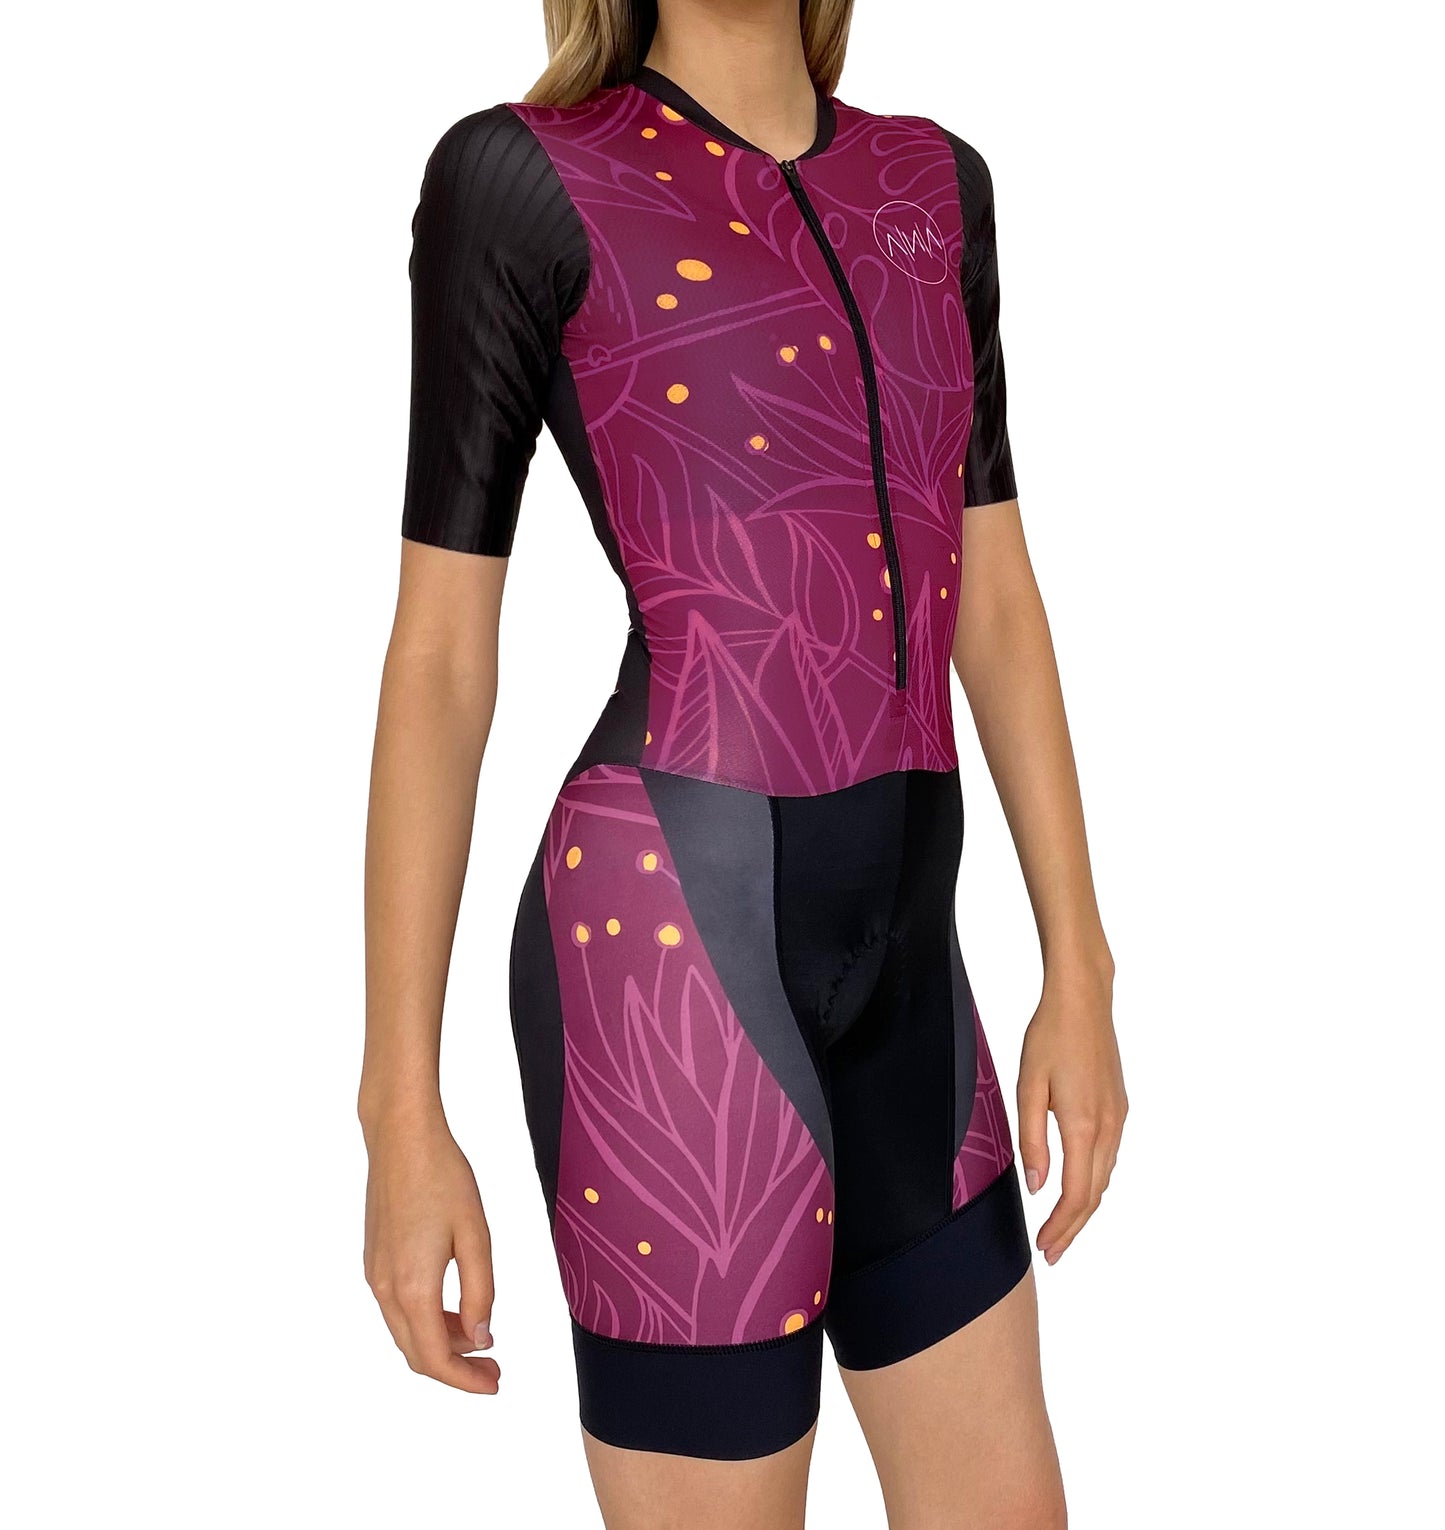 OHANA Triathlon Trisuit Women Short Sleeves